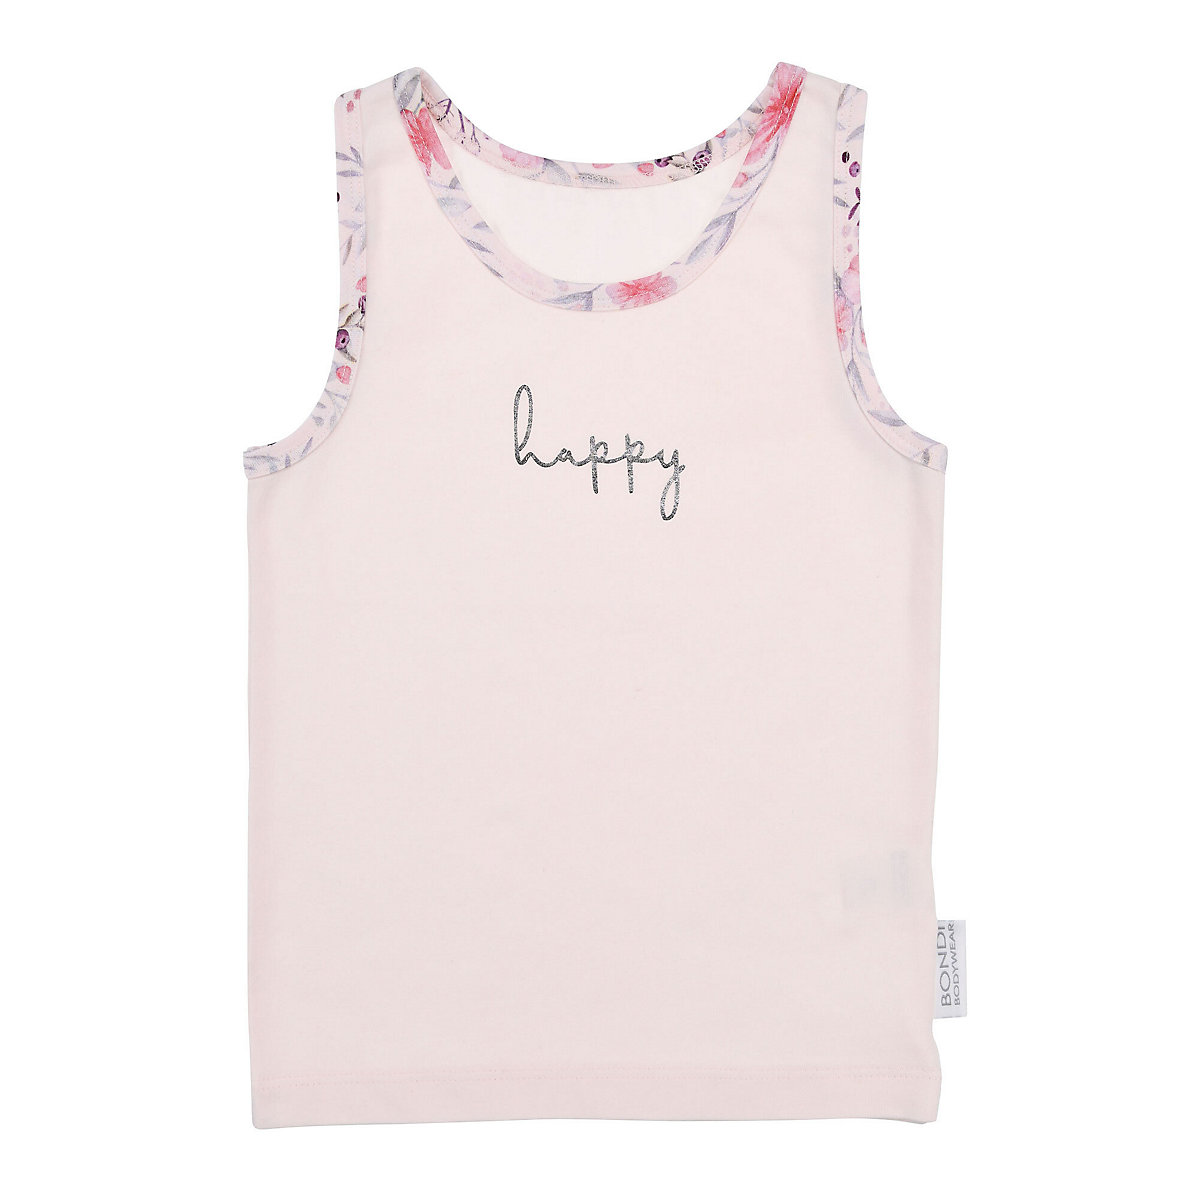 BONDI Kids Unterhemd 'Happy' für Mädchen pastell